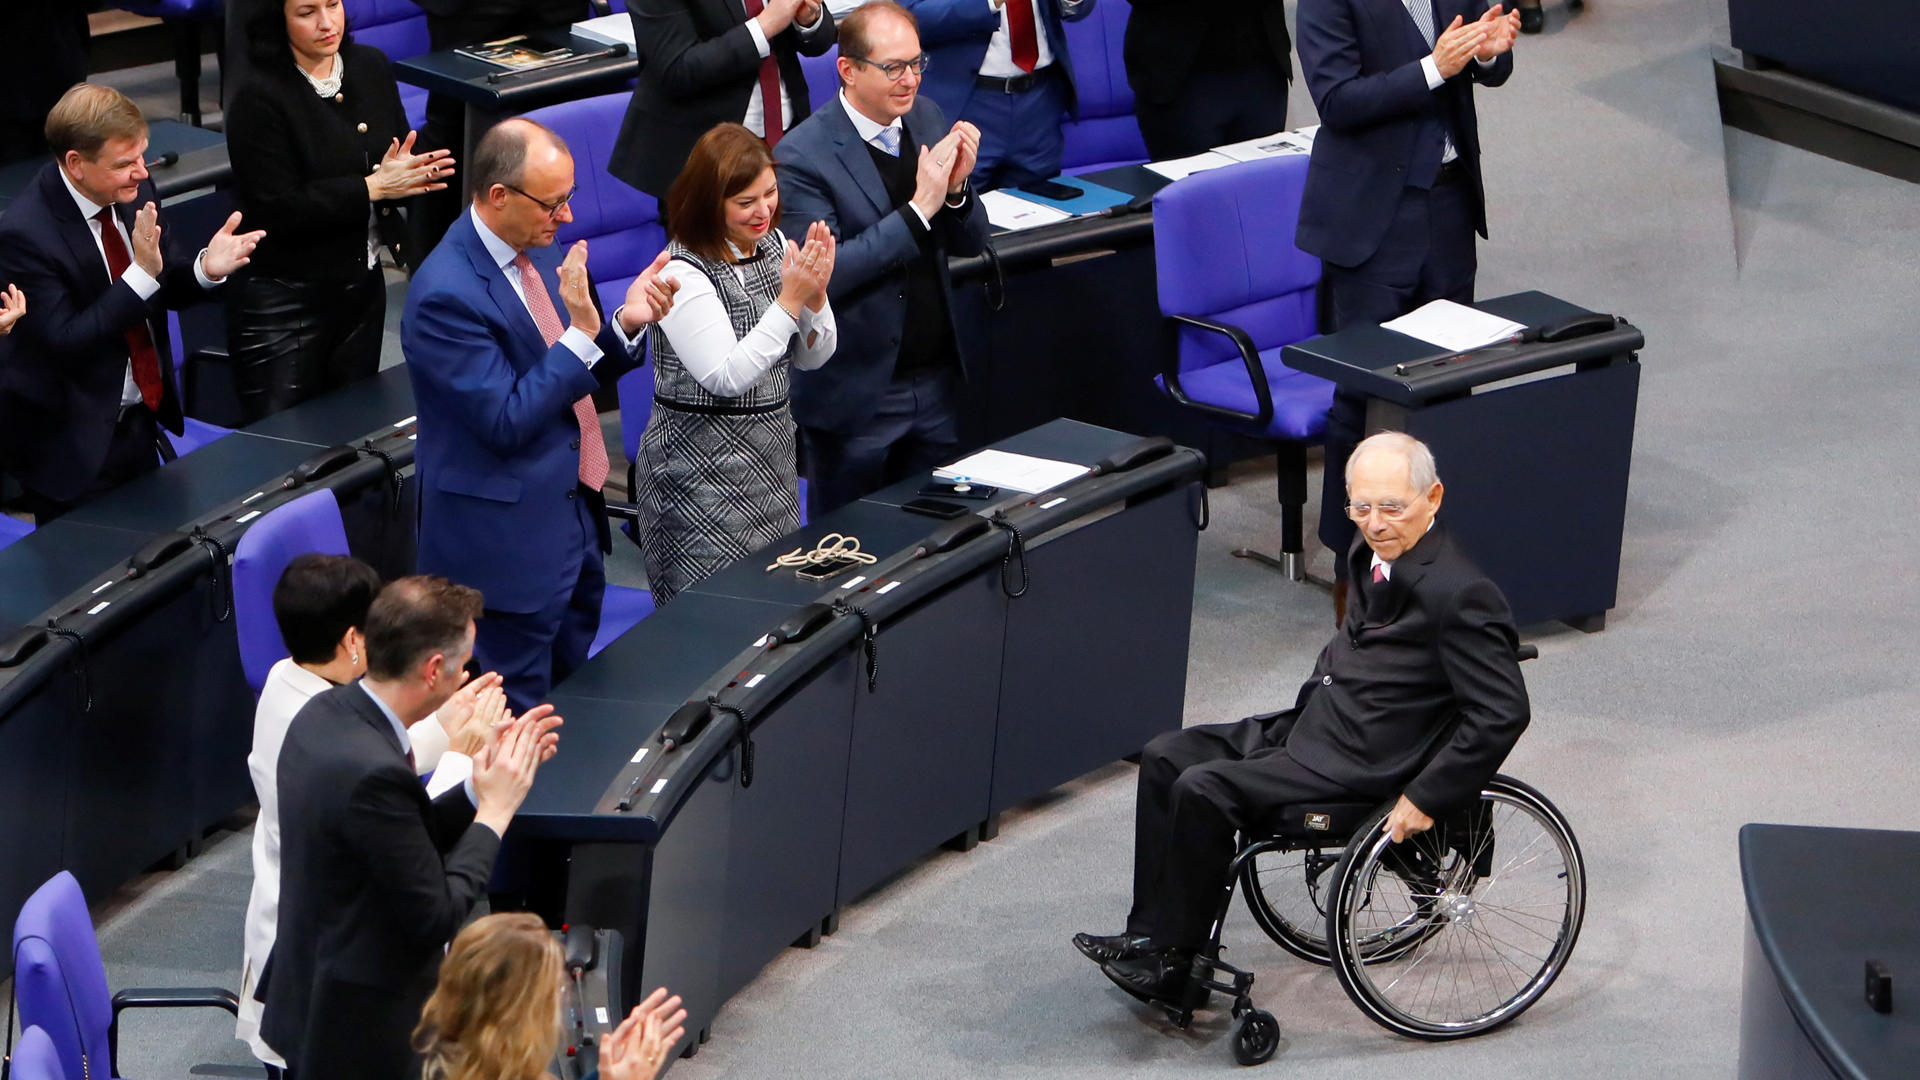 50 Jahre Parlamentszugehörigkeit: Feierstunde für Schäuble